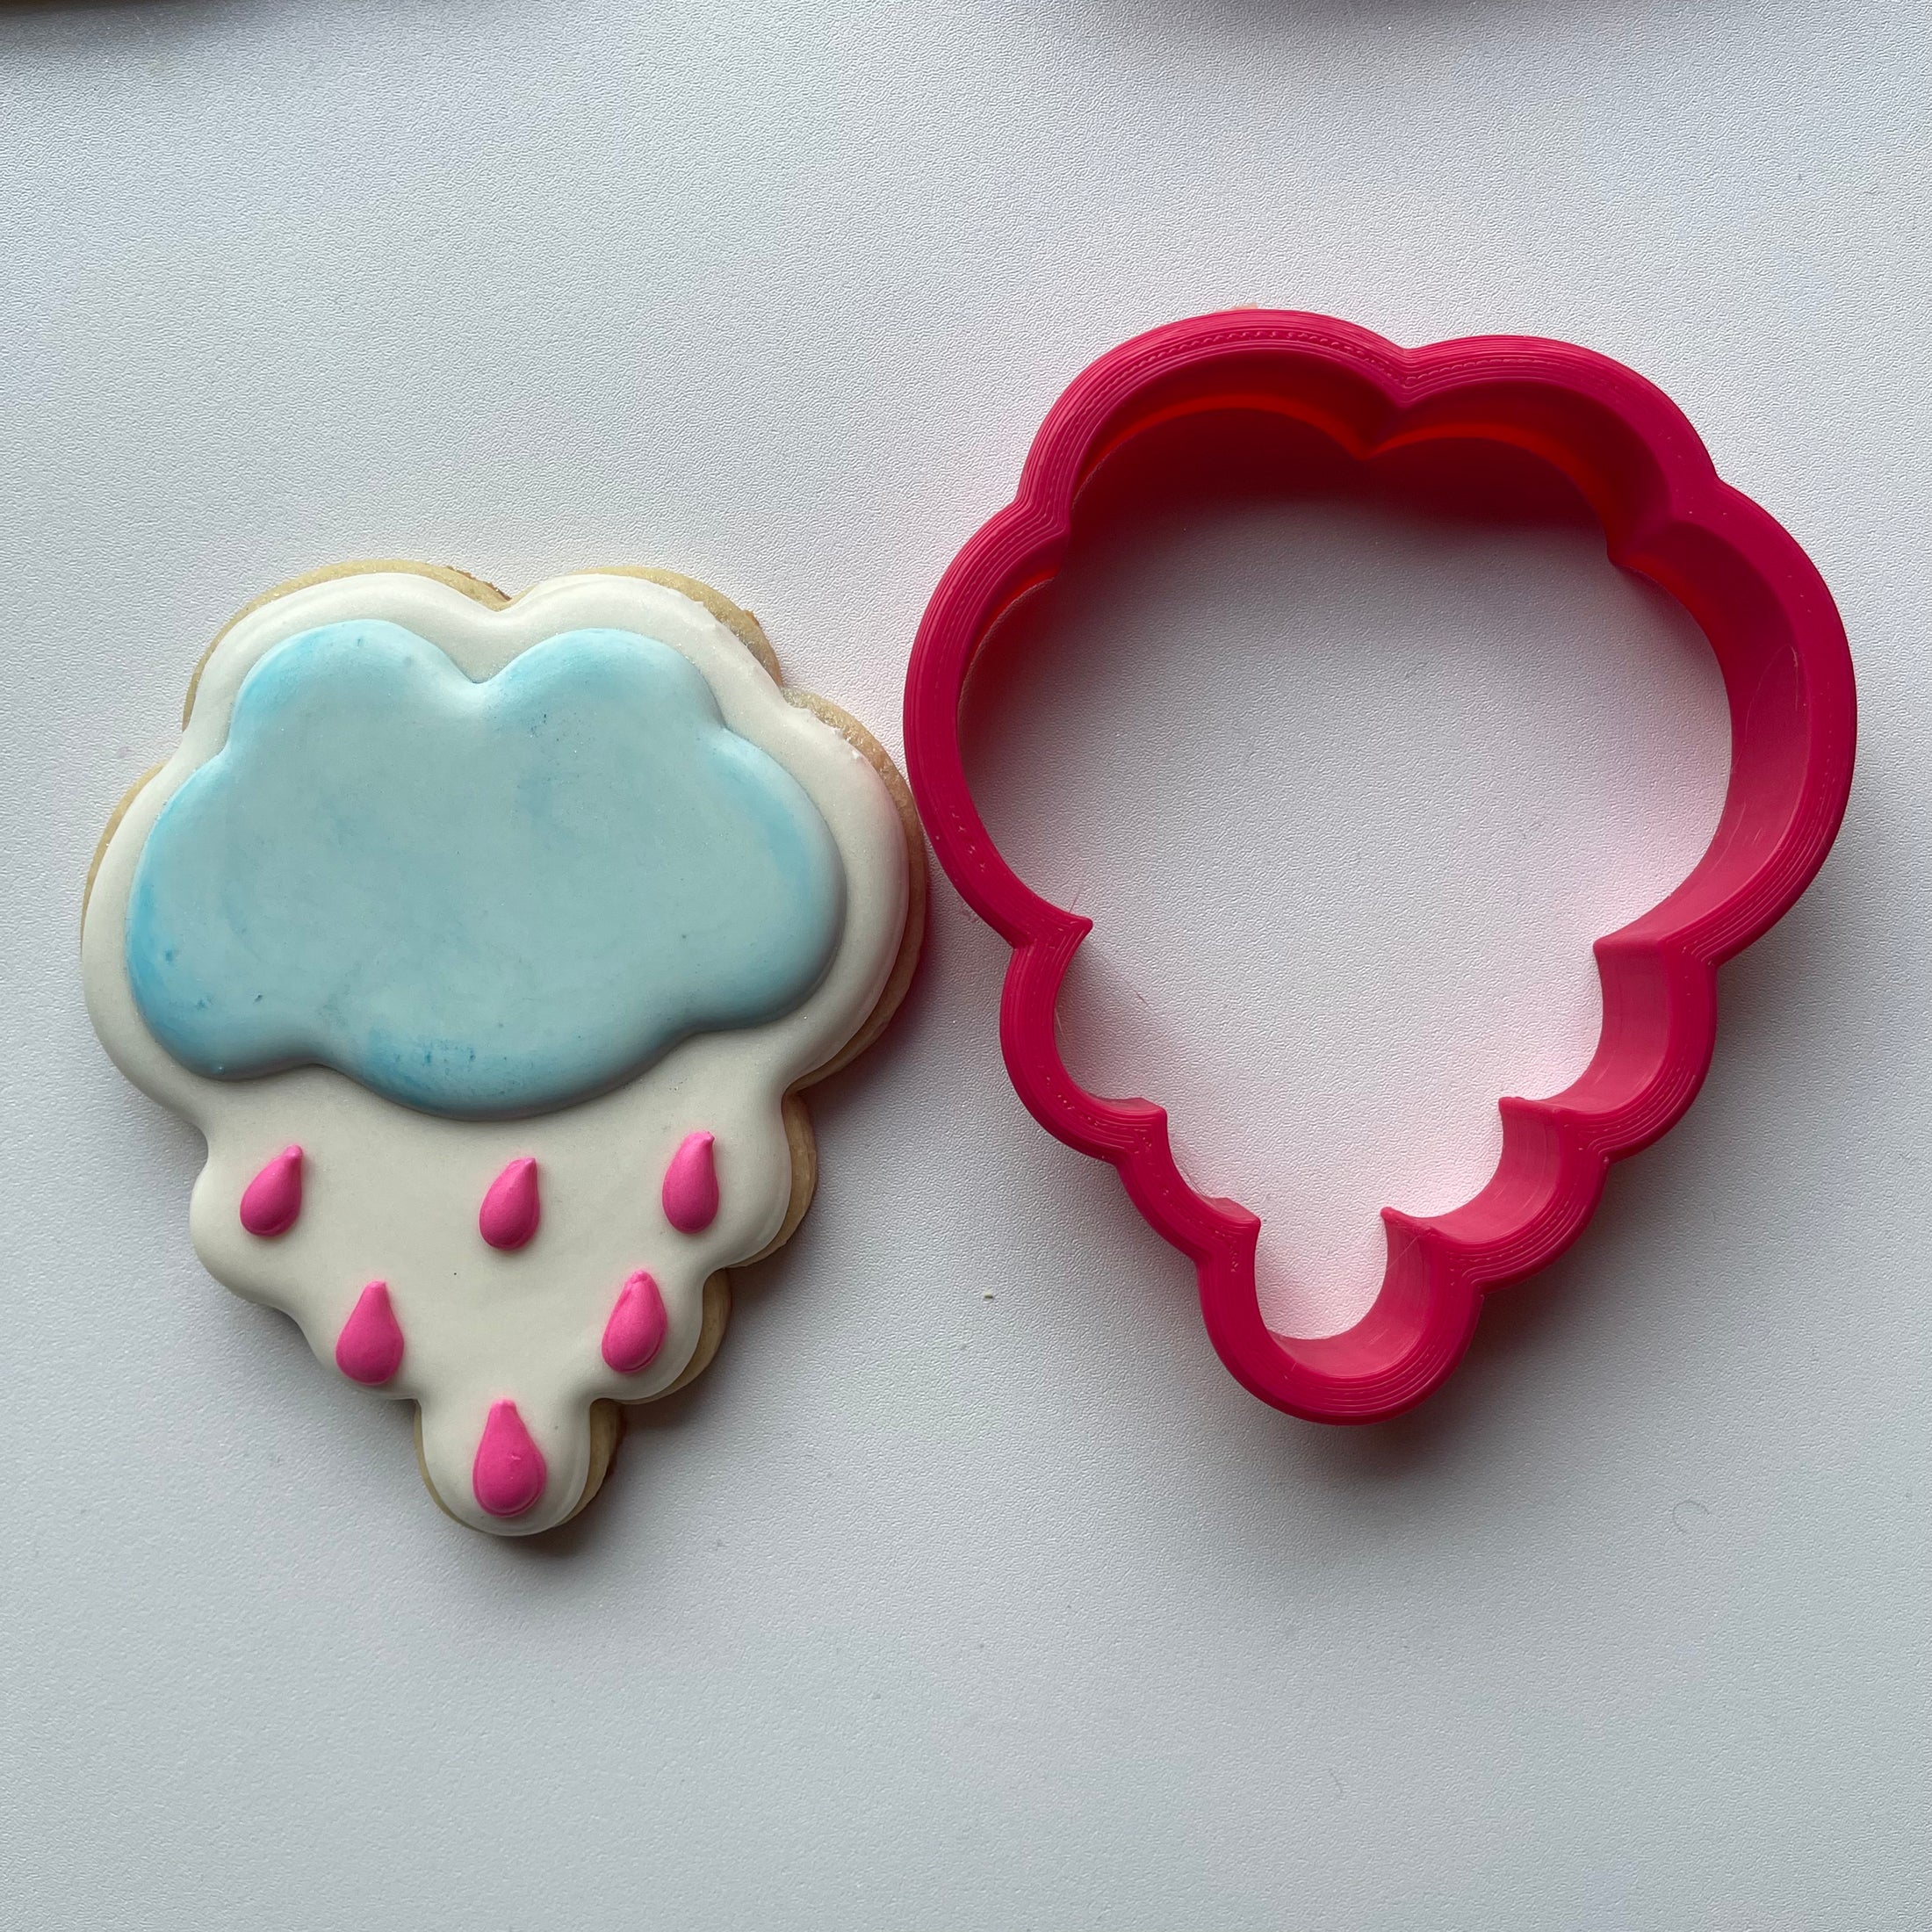 Rain cloud cookie cutter